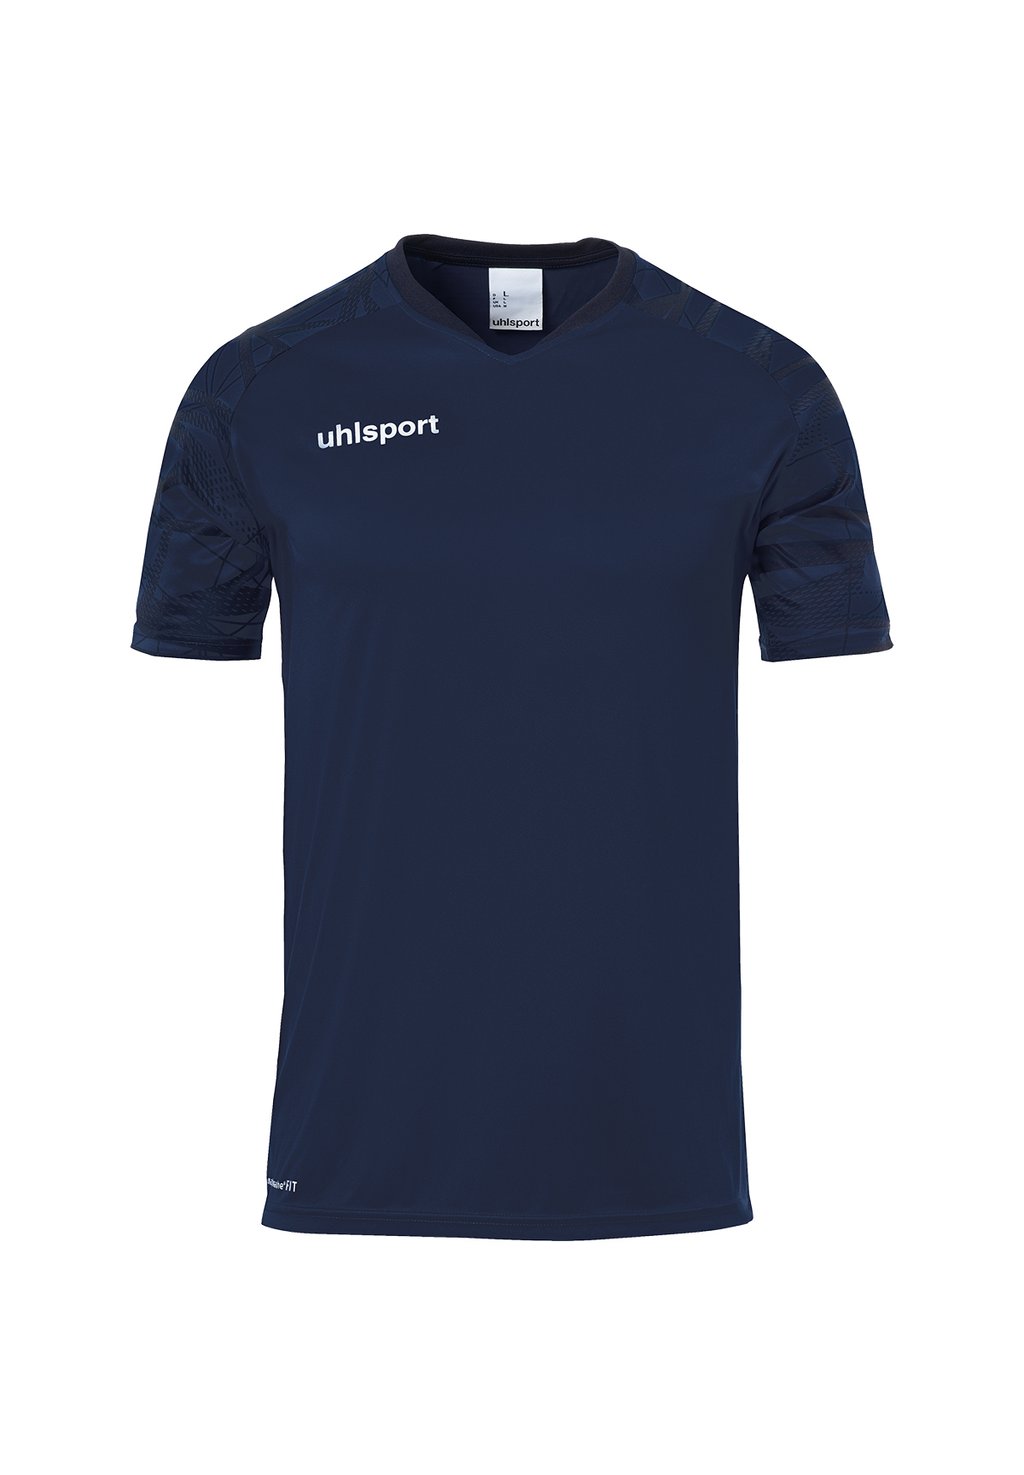 Футбольная майка TEAMSPORT GOAL 25 uhlsport, цвет marine marine футболка с принтом uhlsport цвет marine marine